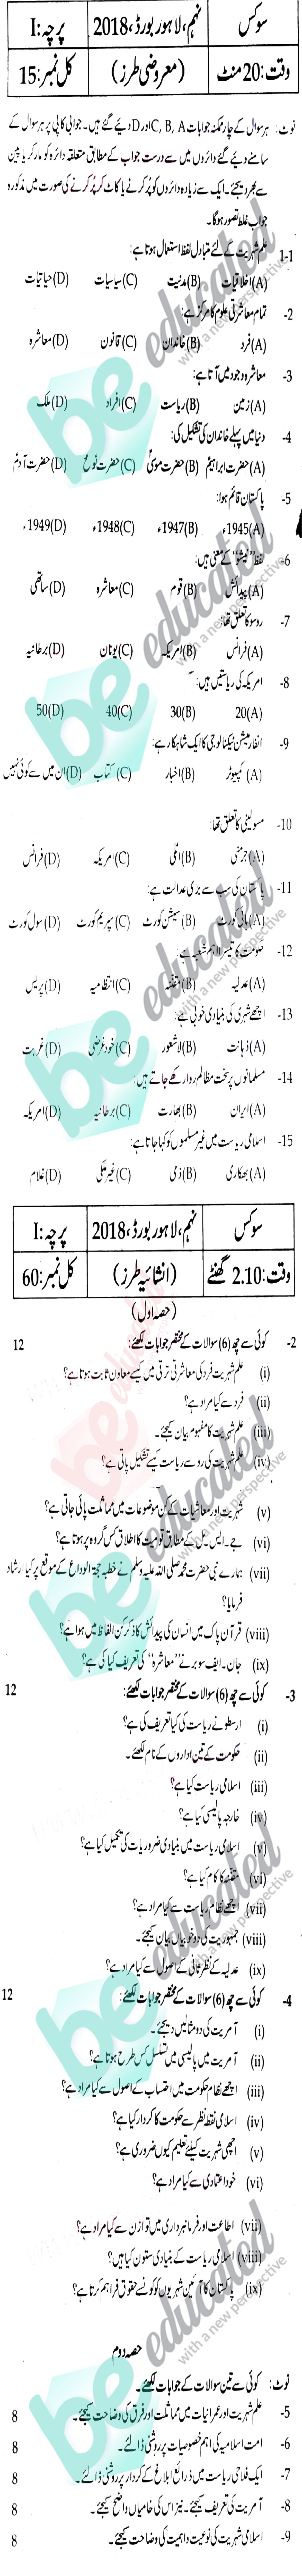 Civics 9th Class Urdu Medium Past Paper Group 1 BISE Lahore 2018